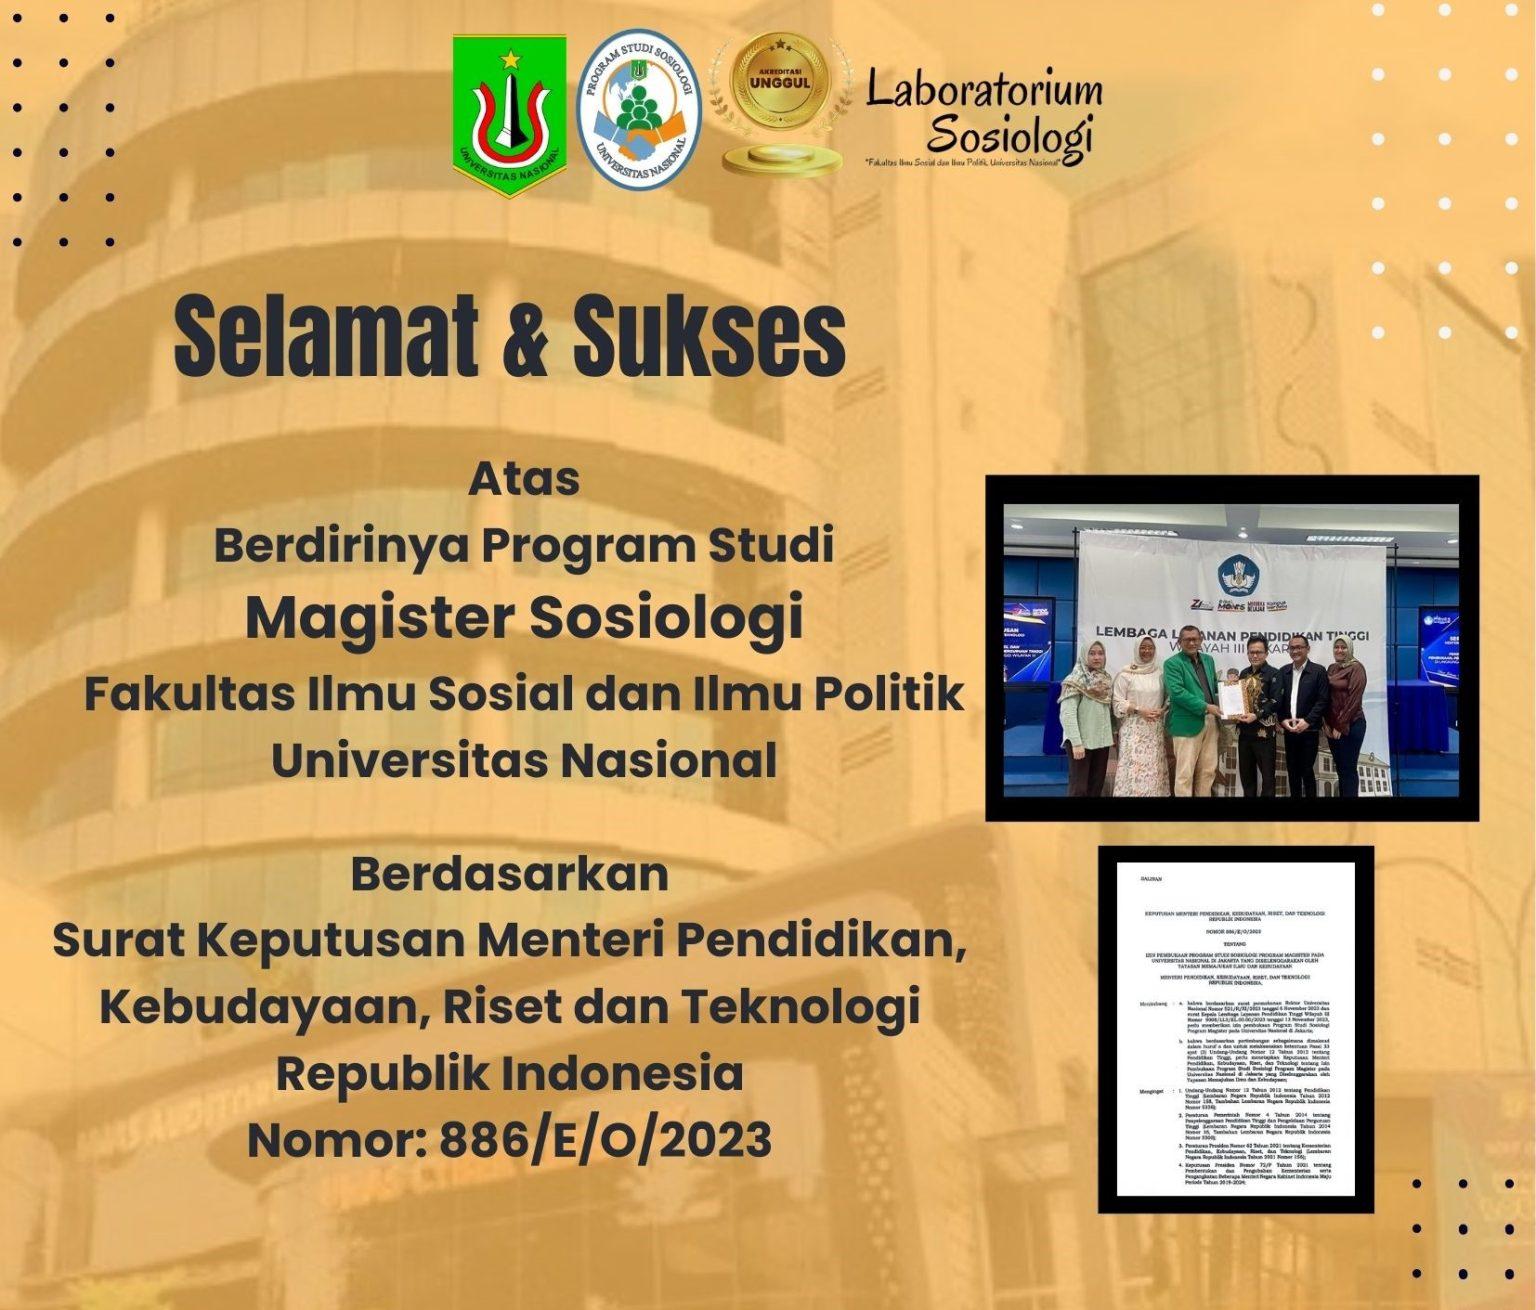 You are currently viewing Selamat & Sukses atas Berdirinya Magister Sosiologi FISIP UNAS